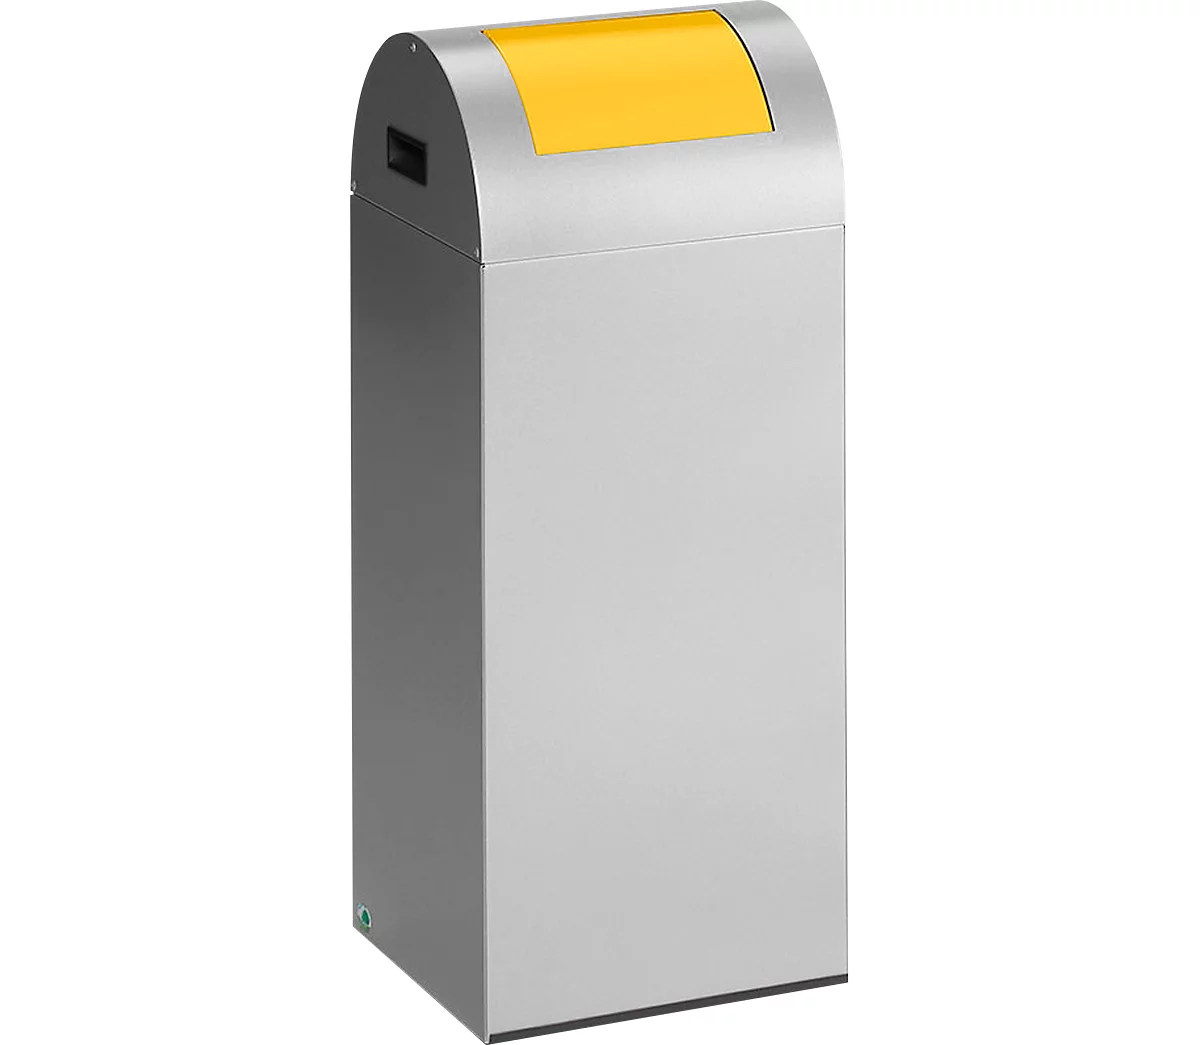 Zelfblussende afvalverzamelaar voor recycleerbaar afval 55R, zilver/geel